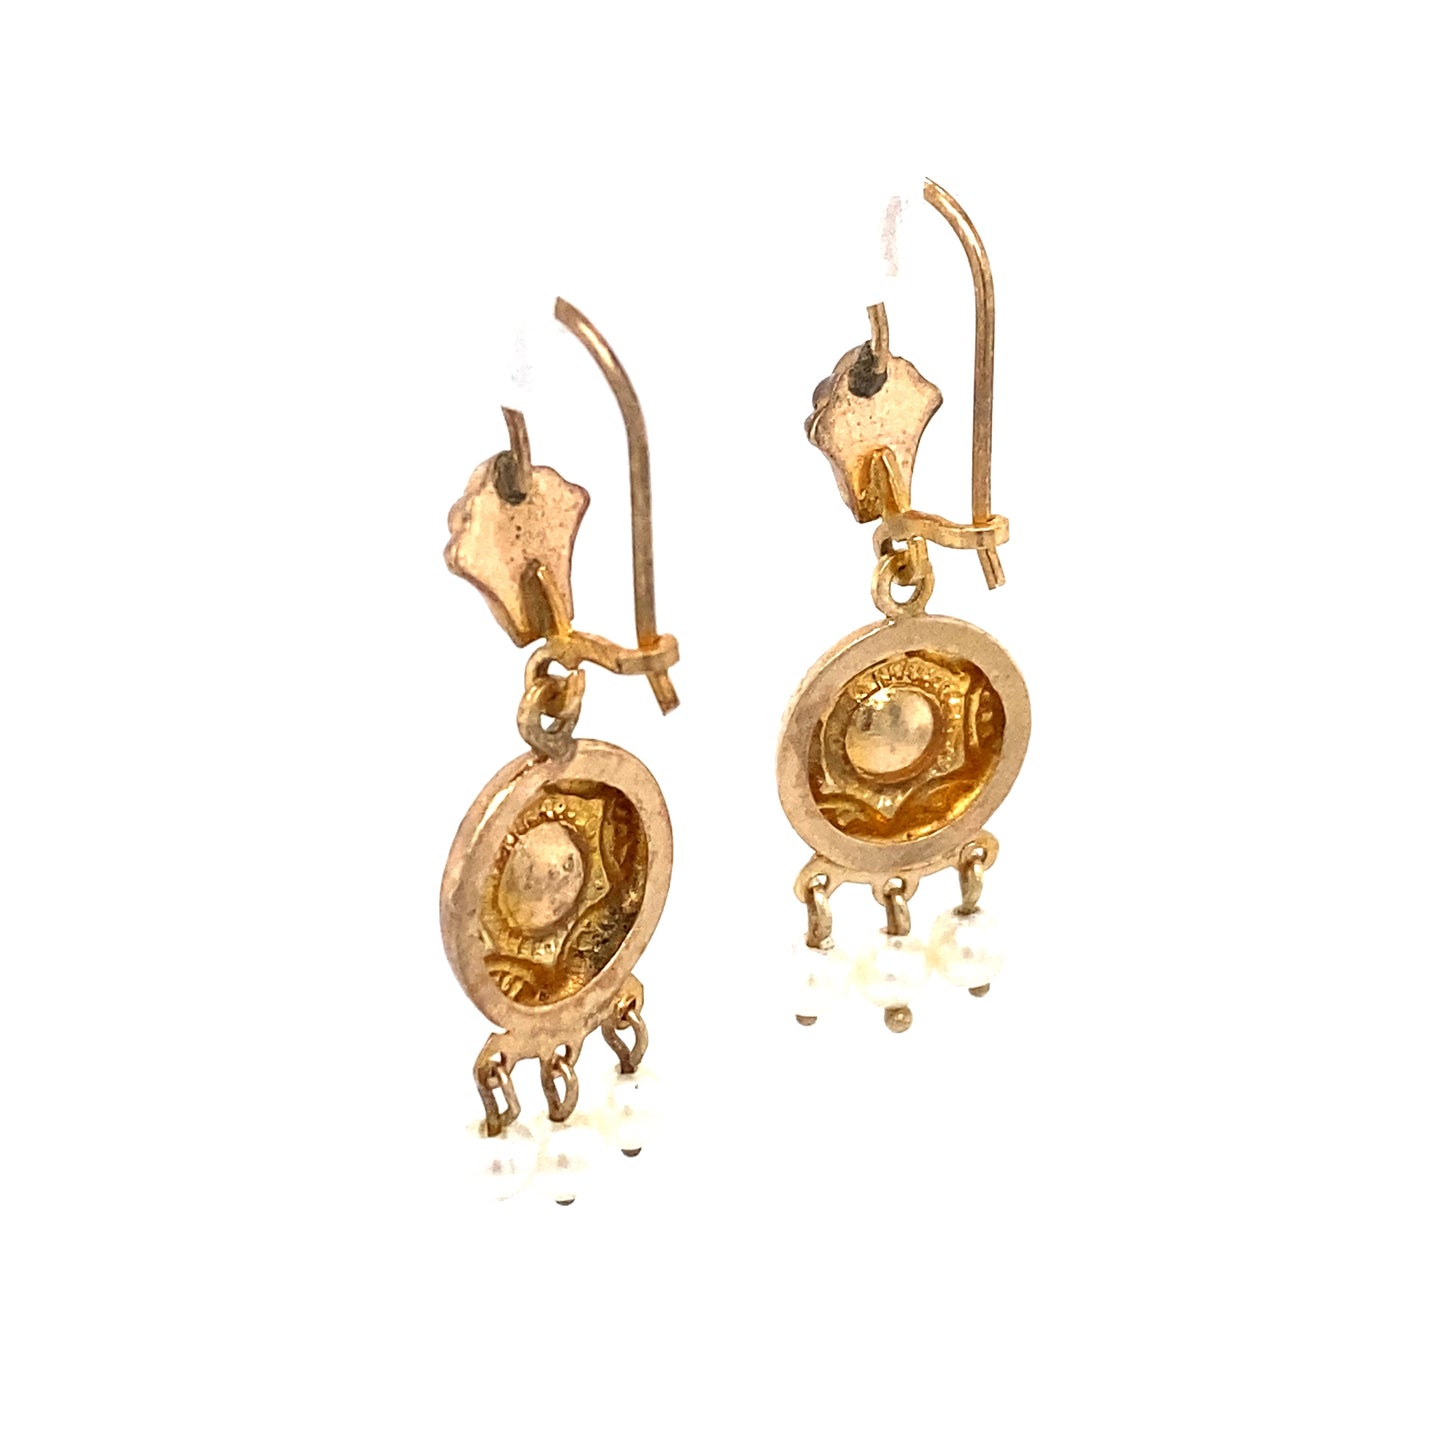 Circa 1920s Pearl Chandelier Drop Earrings in 14K Gold